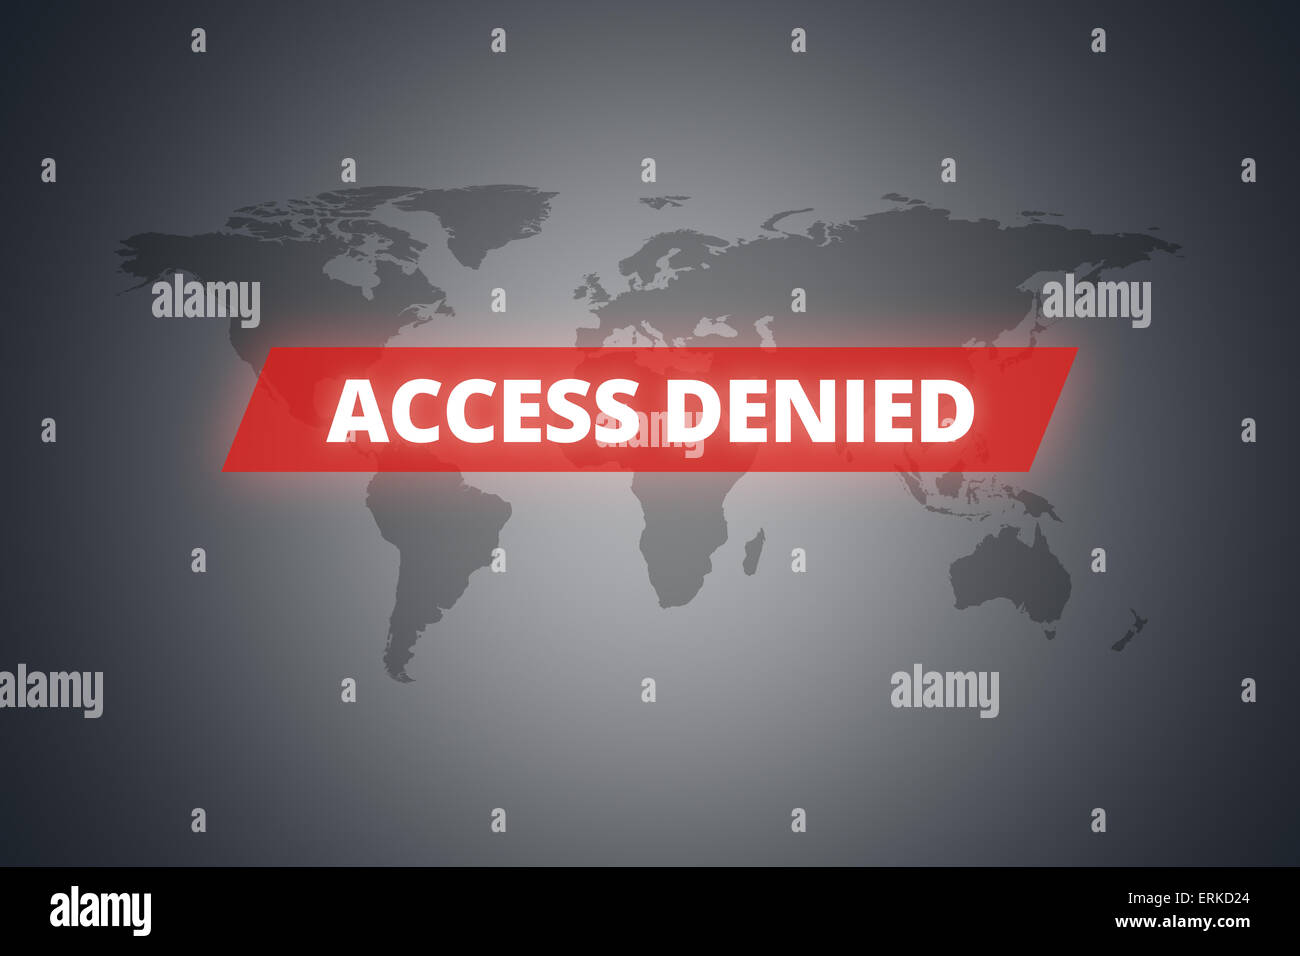 Message de refus d'accès sur l'écran technologique sur dark world map background. Banque D'Images